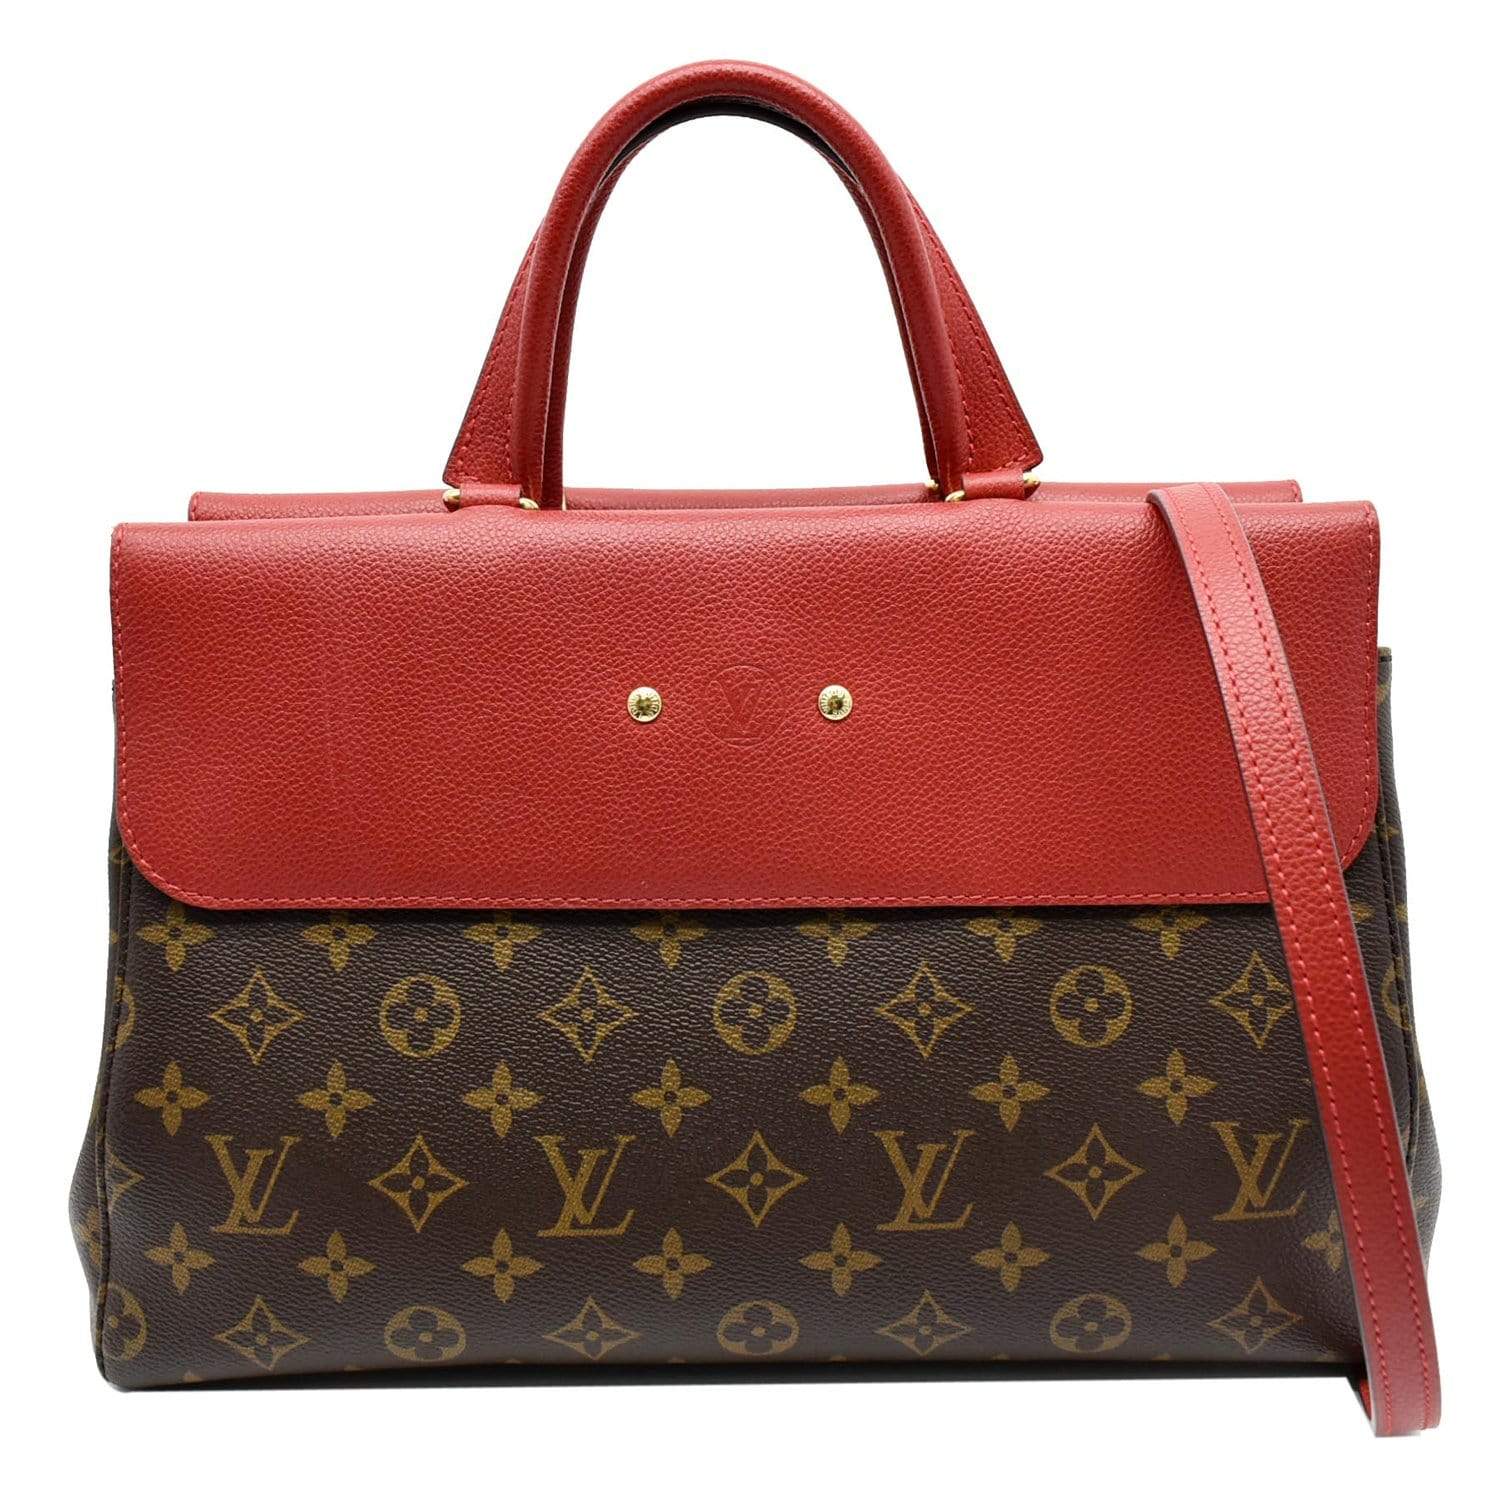 Louis Vuitton Néonoé Shoulder Bag Monogram Canvas and Red Leather